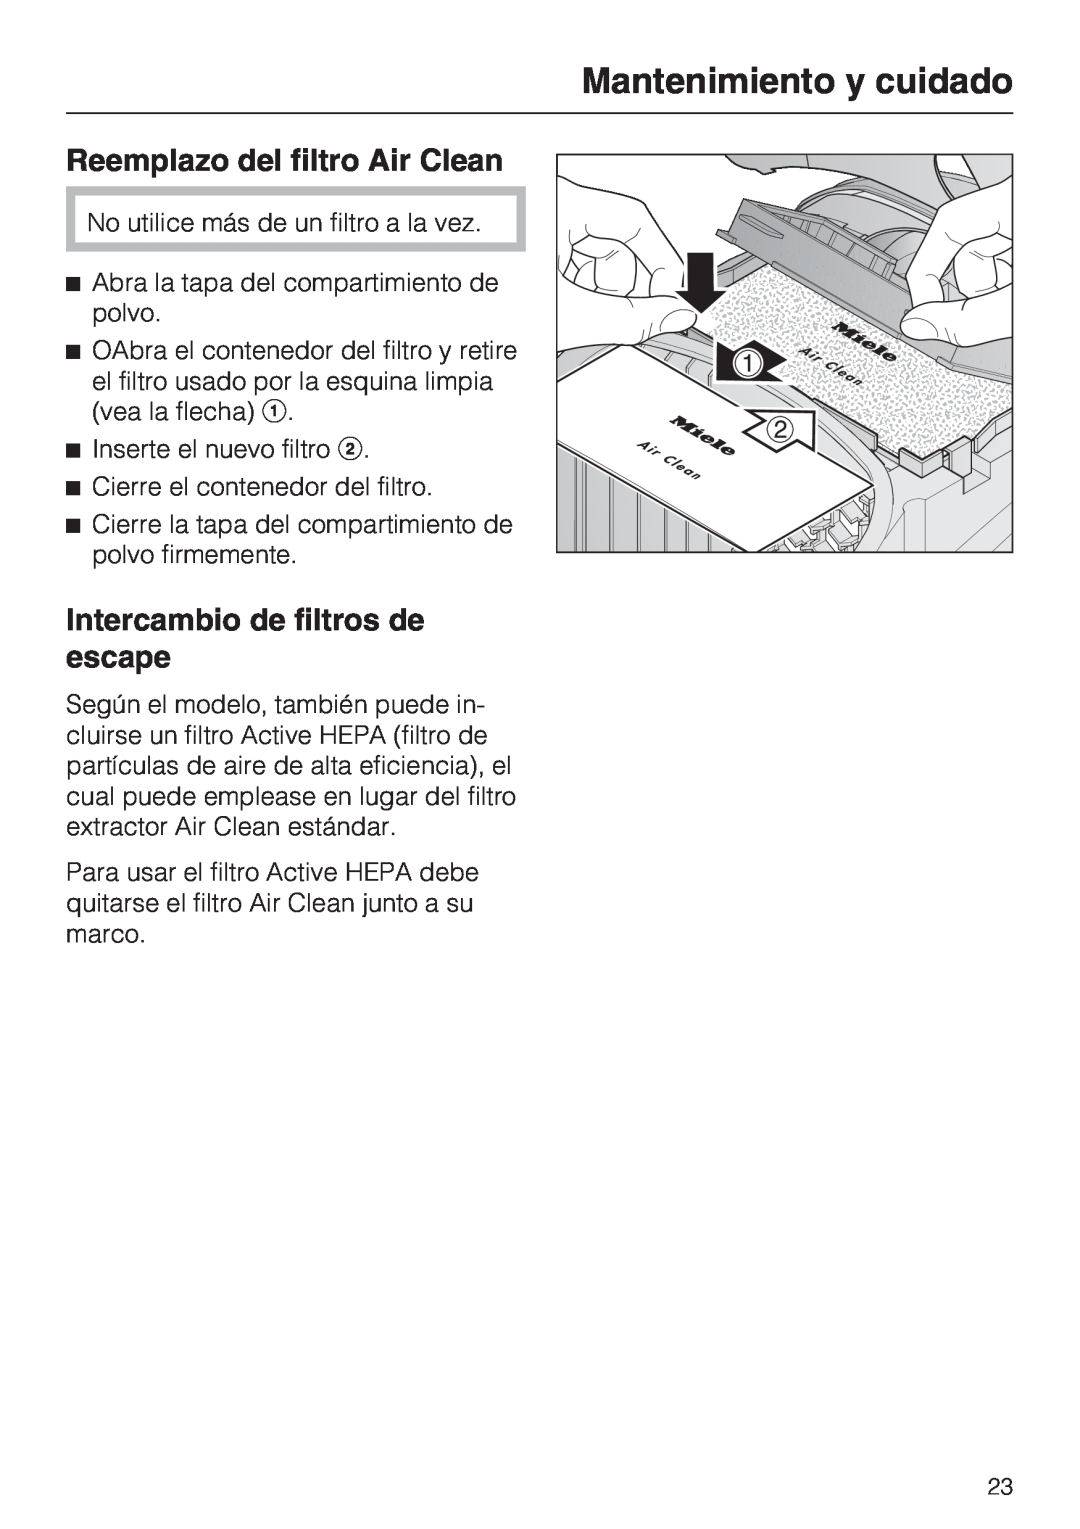 Miele S 2001 manual Reemplazo del filtro Air Clean, Intercambio de filtros de escape, Mantenimiento y cuidado 